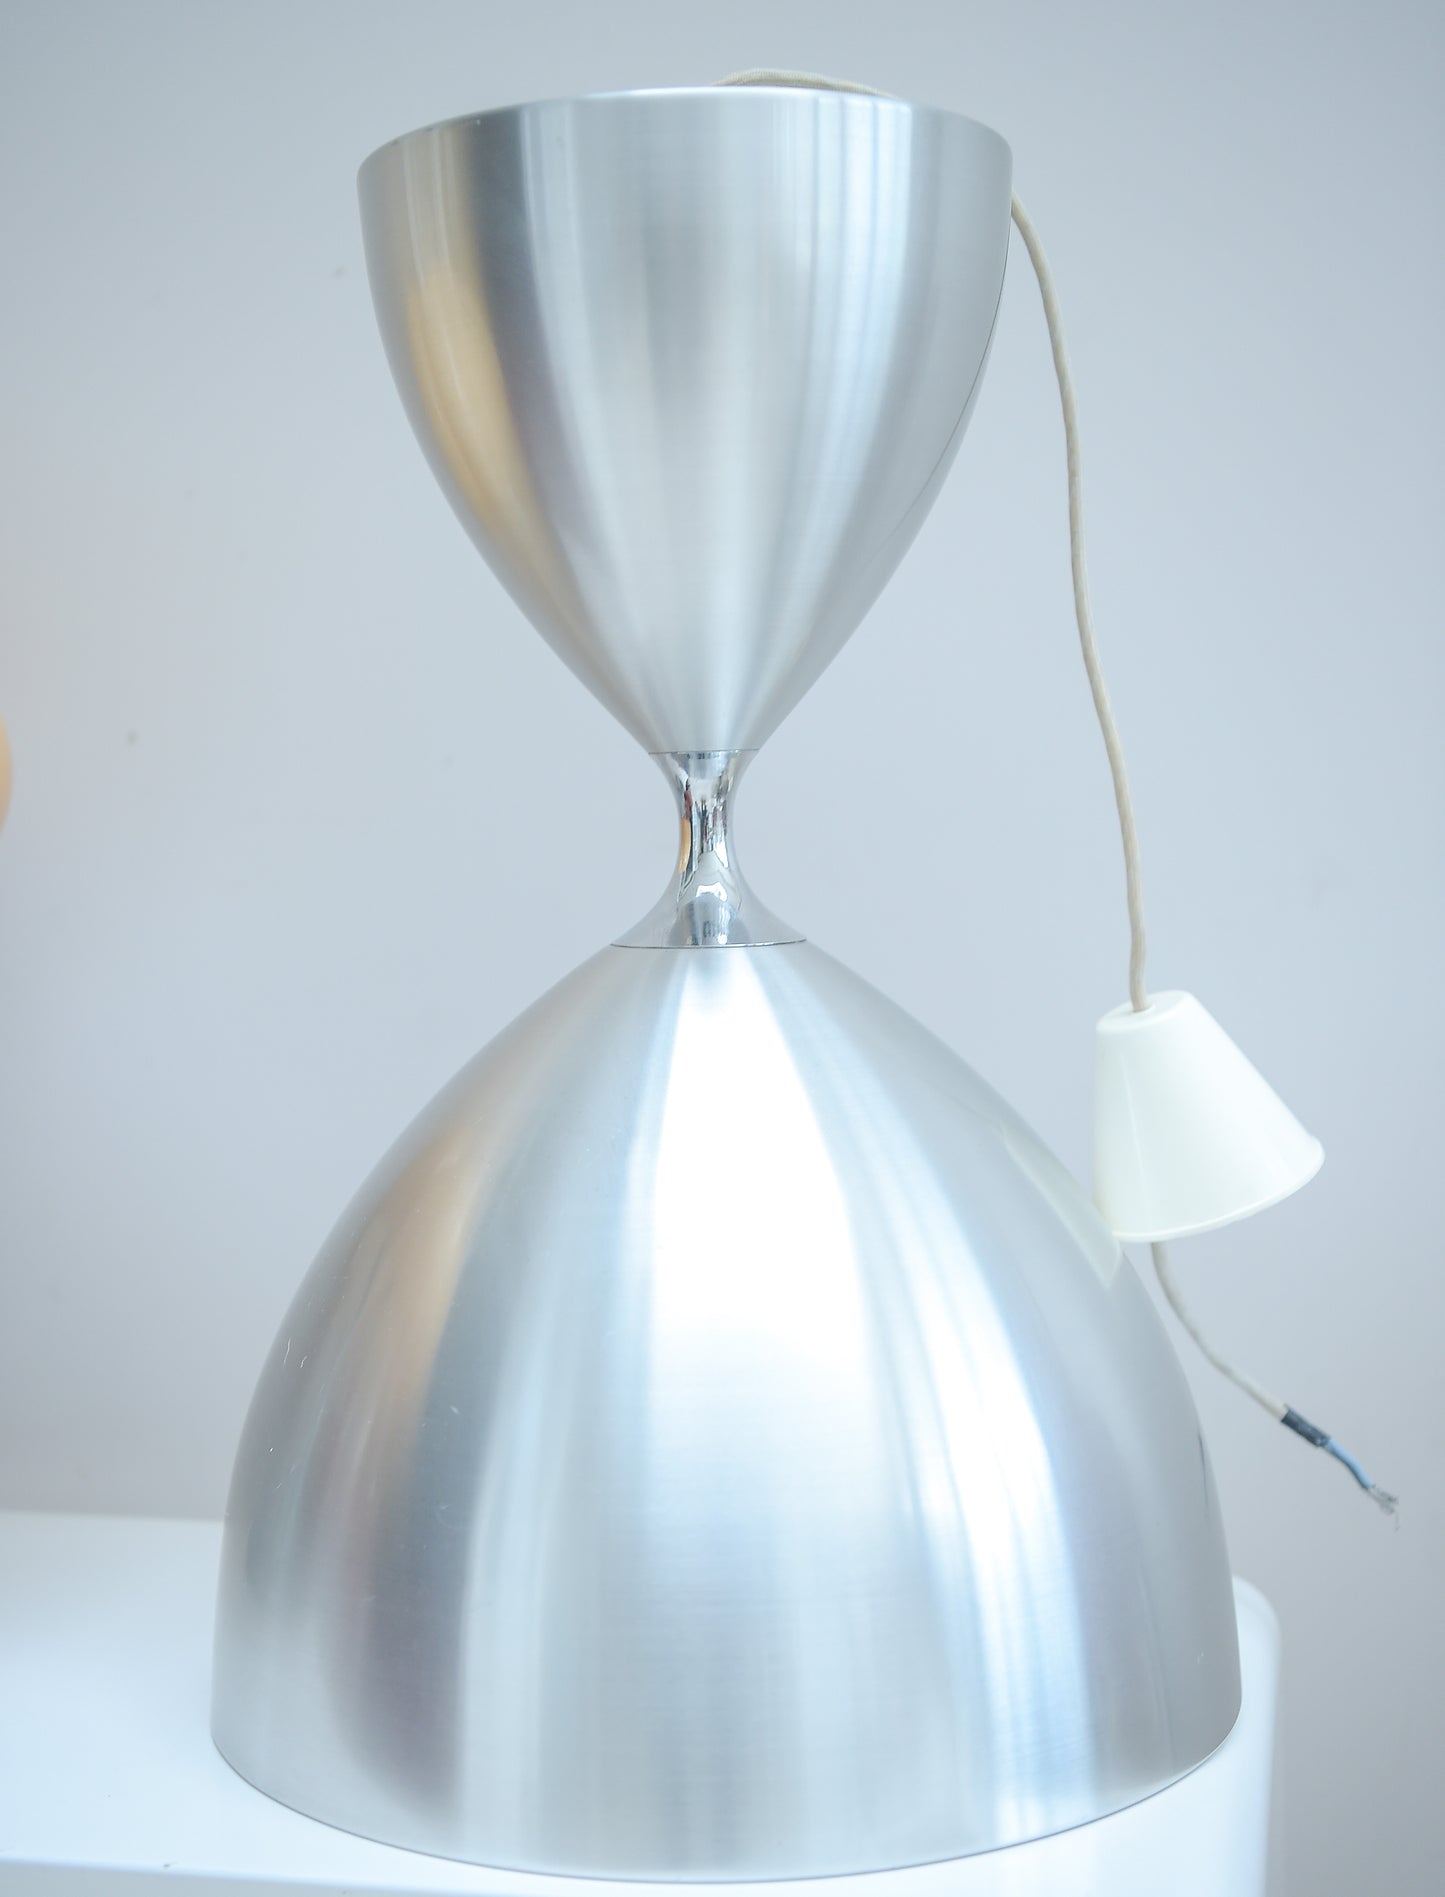 "VEGA" HANGING LAMP BY JO HAMMERBORG FOR FOG & MORUP 1960S. DANISH